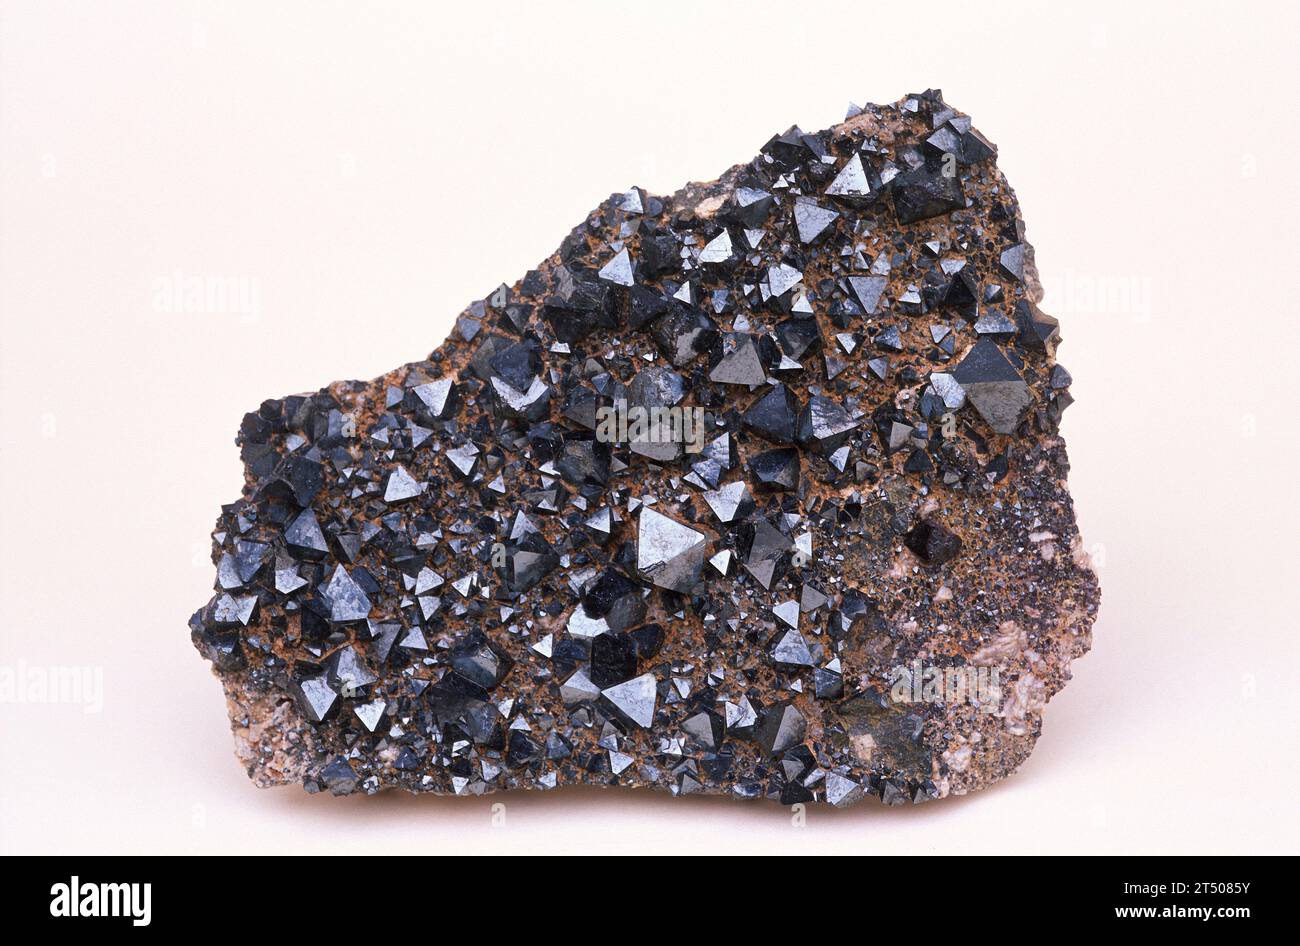 Roche Cristalline De Minerai De Fer Magnétique Naturel De Magnétite Image  stock - Image du rugueux, objet: 170796507